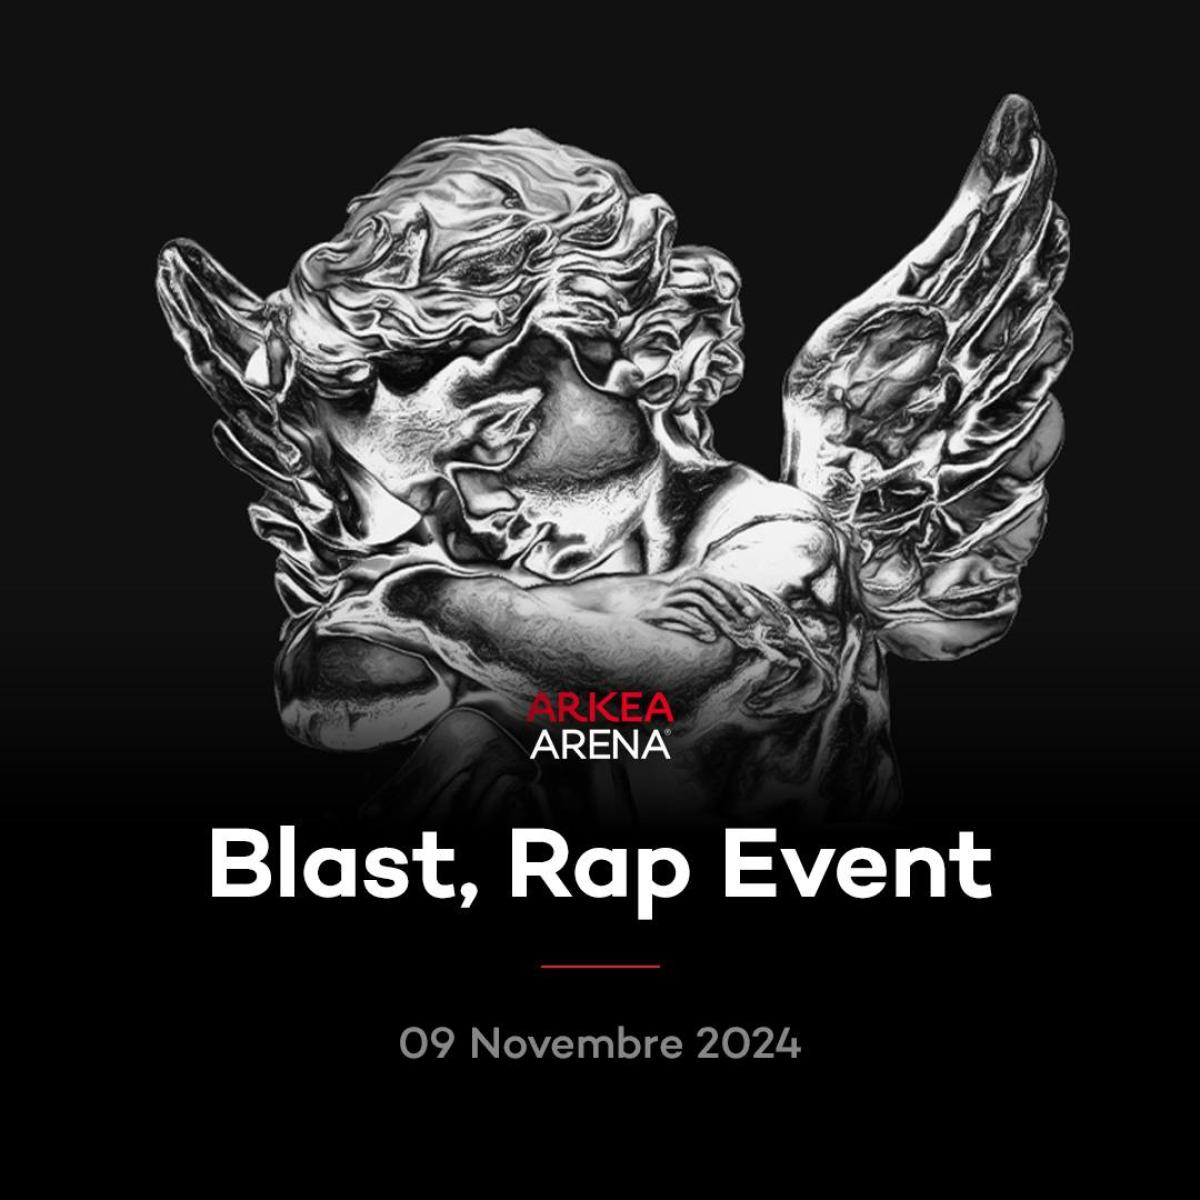 Blast - Rap Event en Arkea Arena Tickets